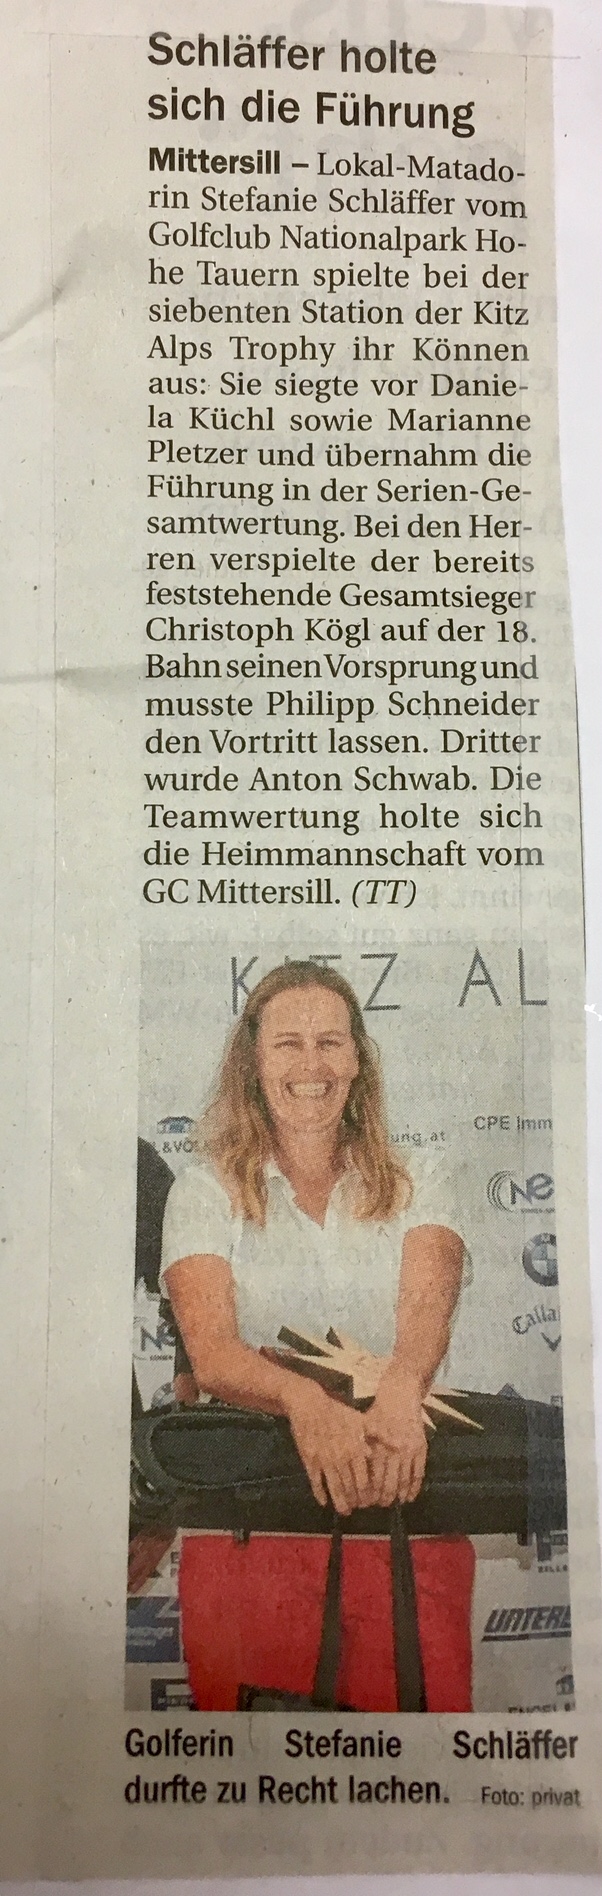 Mittersill – Pressemeldung Tiroler Tageszeitung